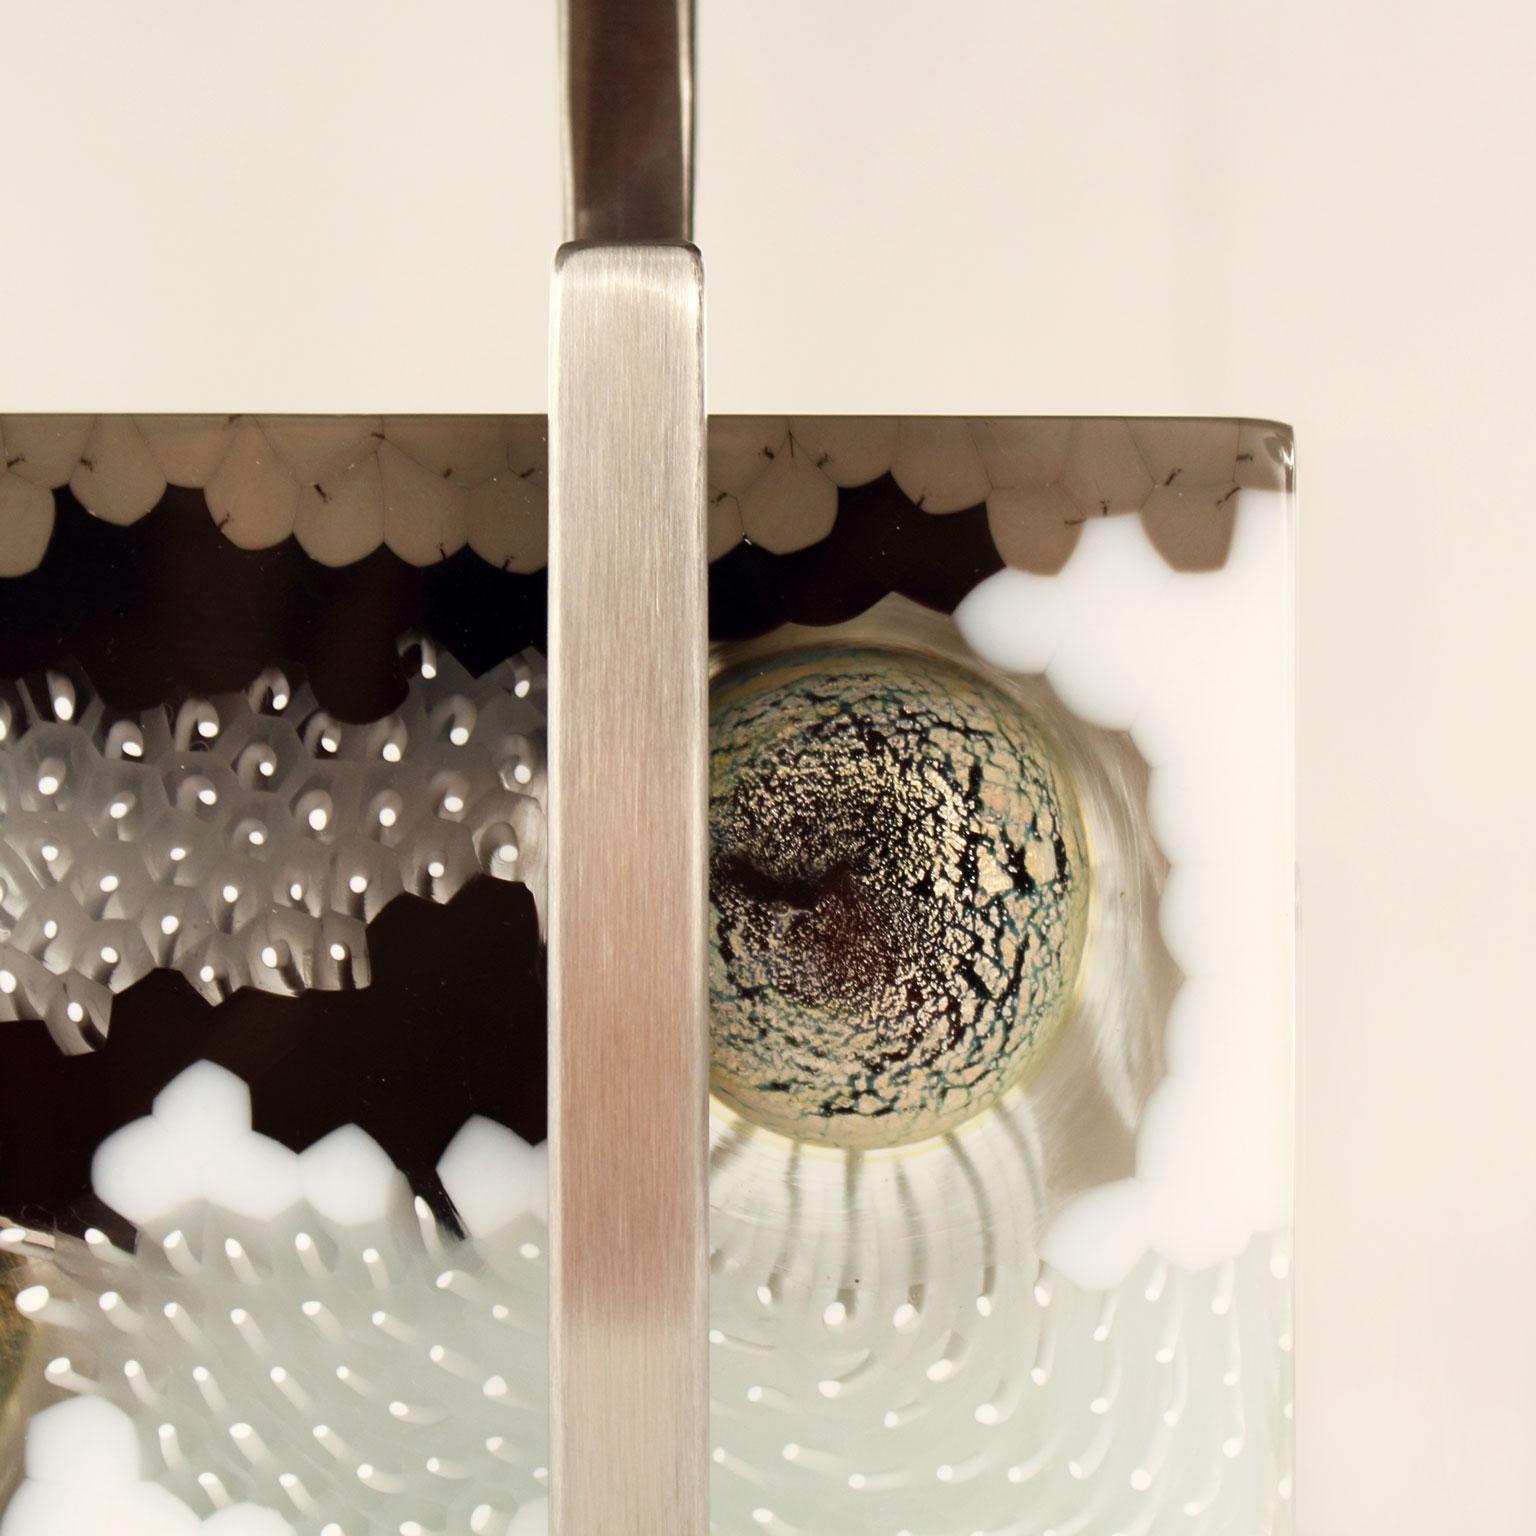 Lampe de table B-lock. 60 cm de long, bloc en verre de Murano artistique, abat-jour en organza gris foncé et base en hêtre blanc.
Le bloc de verre artistique de Murano est une expression créative et naturelle de la murrine et des tiges de verre